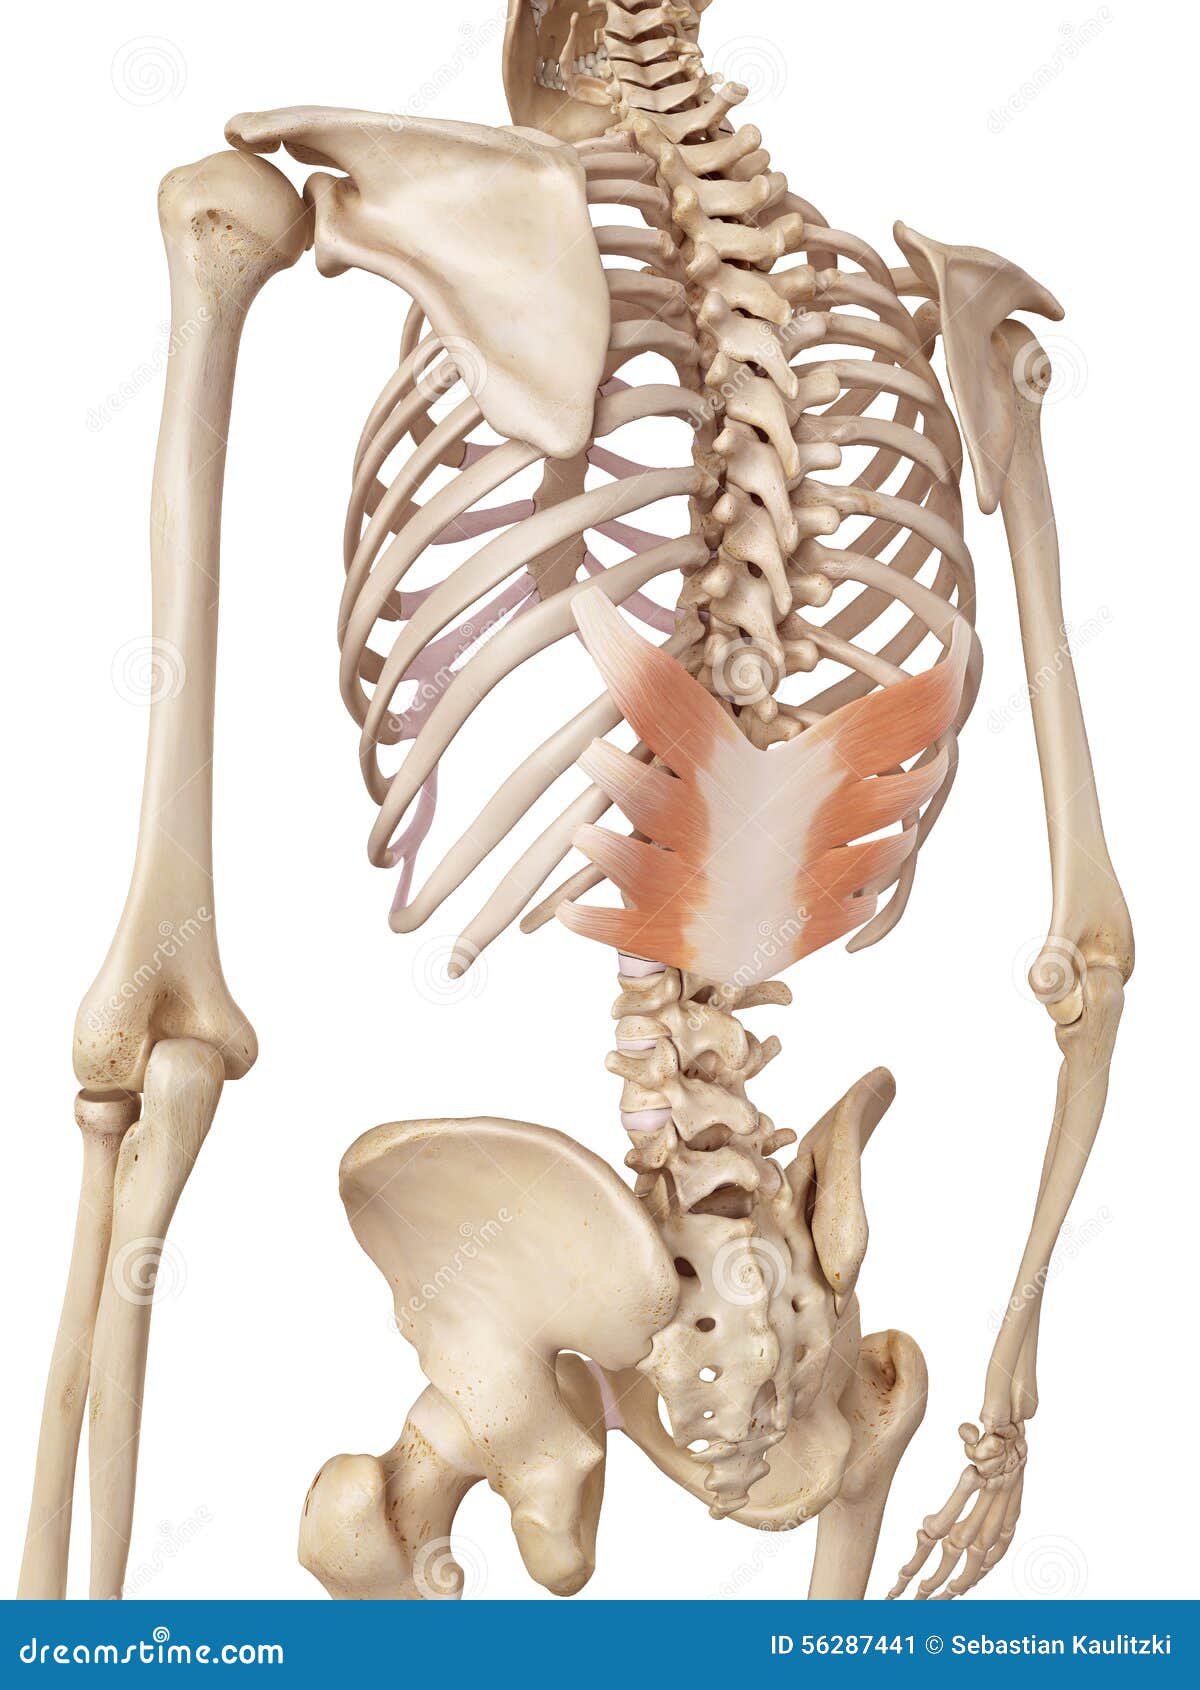 the serratus posterior inferior